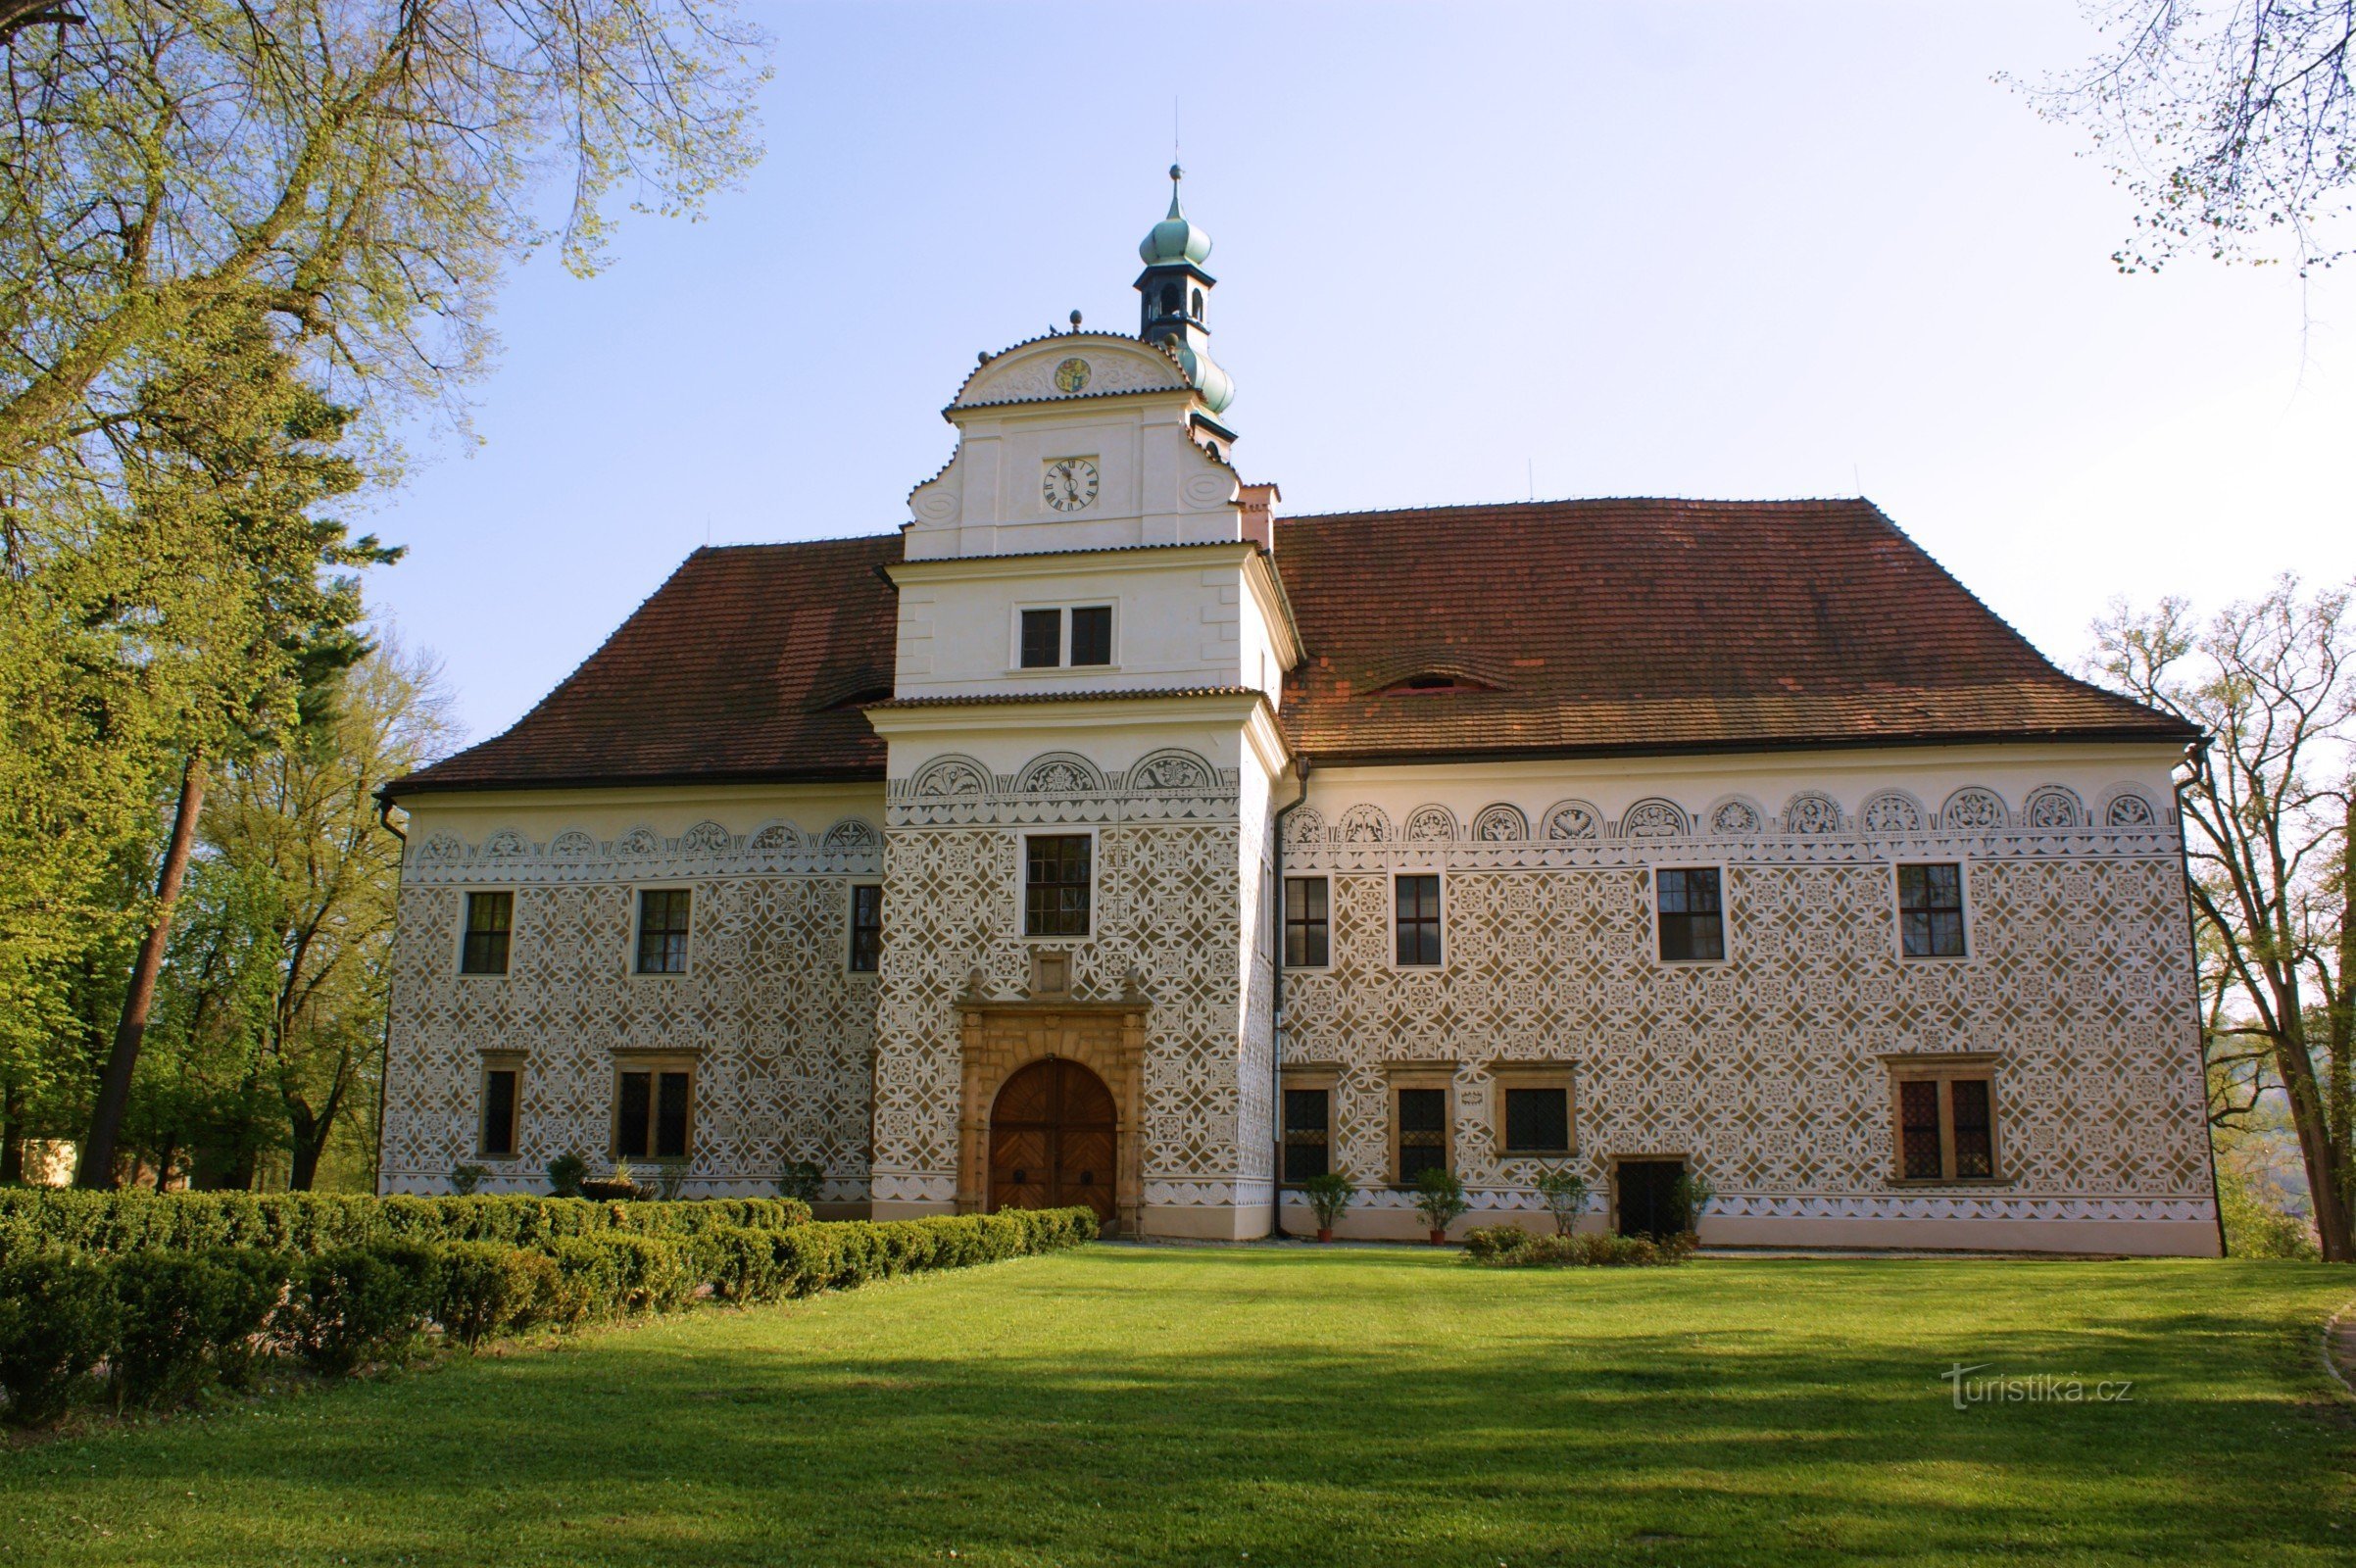 Castello Doudleby nad Orlicí un gioiello della Boemia orientale